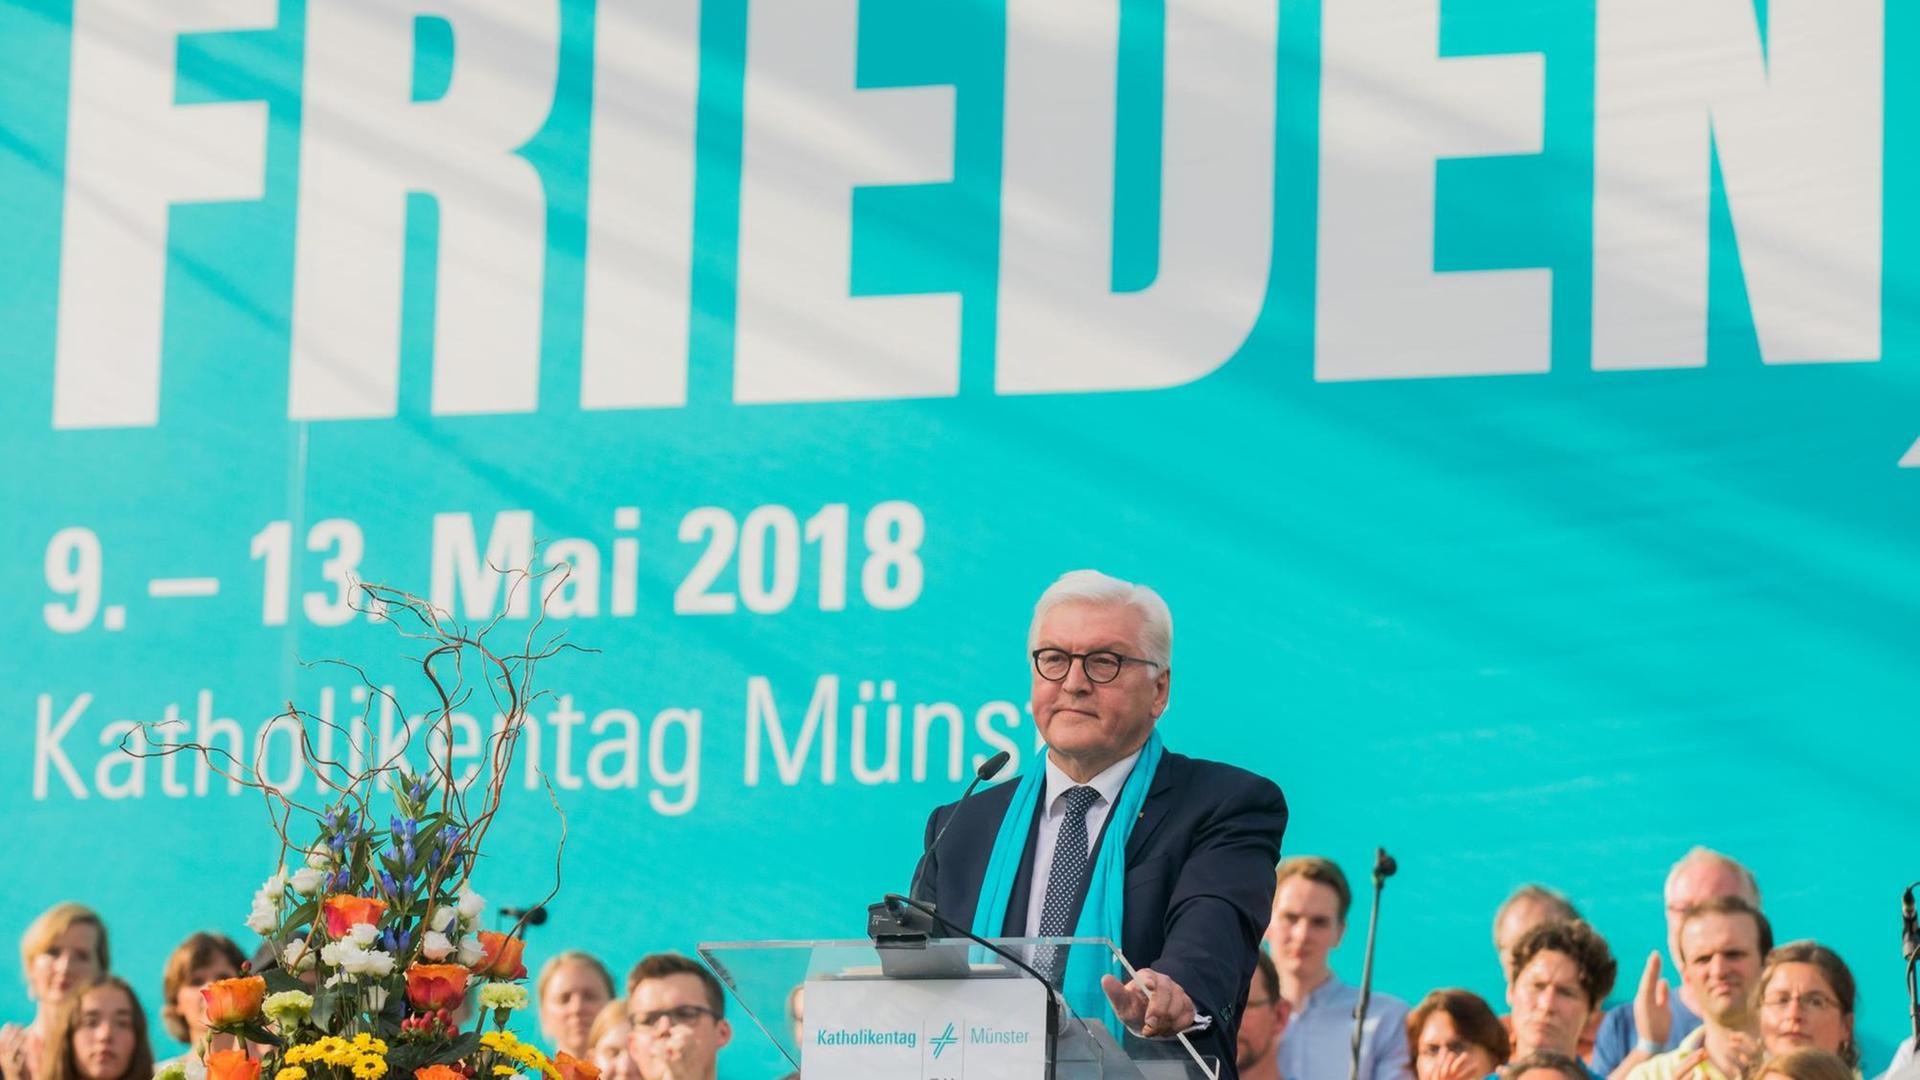 Bundespräsident Steinmeier steht hinter einem Rednerpult. Im Hintergrund ist ein blaues Banner mit dem Motto des diesjährigen Katholikentages "Suche Frieden" in weißer Schrift zu sehen.